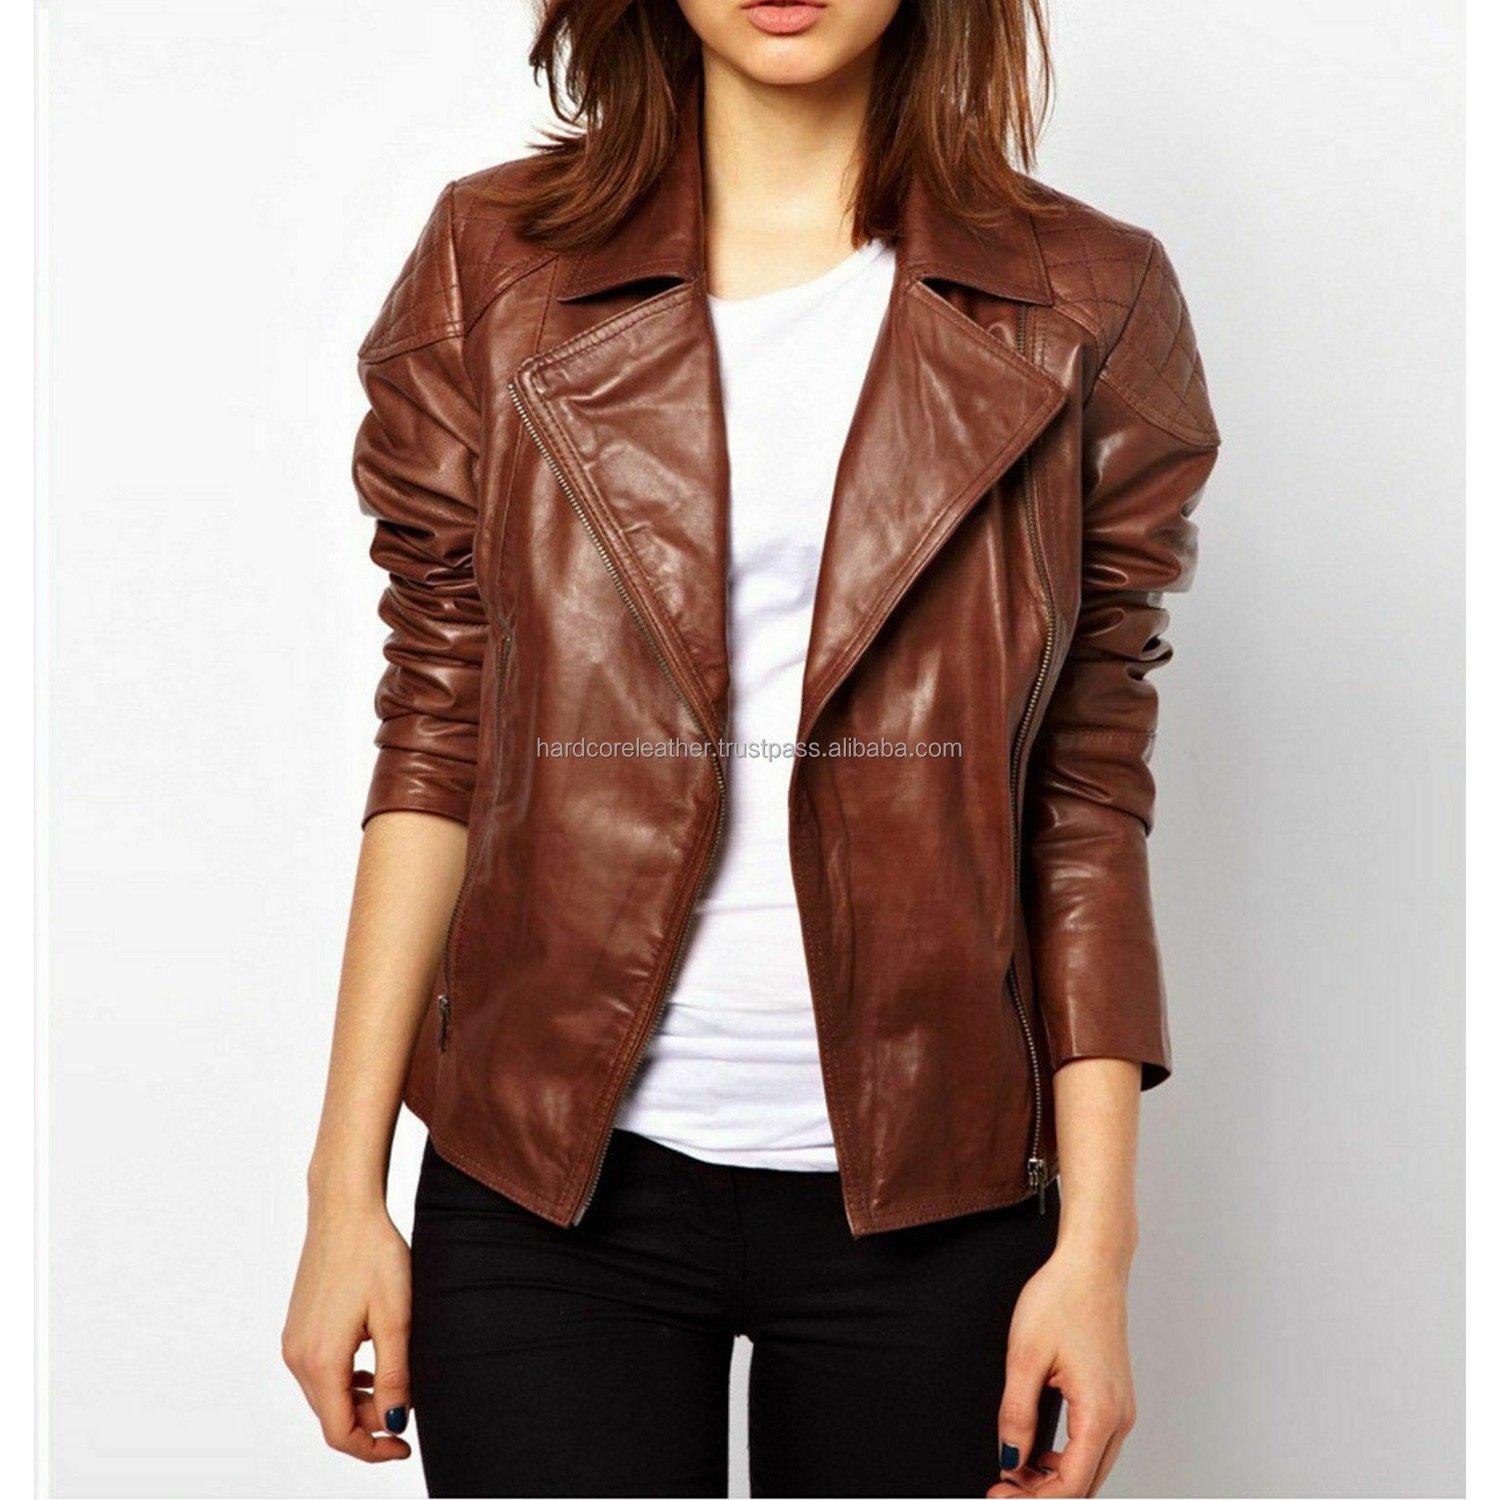 Кожаные куртки новосибирск женские. Чжи Ган куртки кожаные. Коричневая кожаная куртка женская. Женские кожаные куртки коричневого цвета. Куртка женская коричневая кожа.